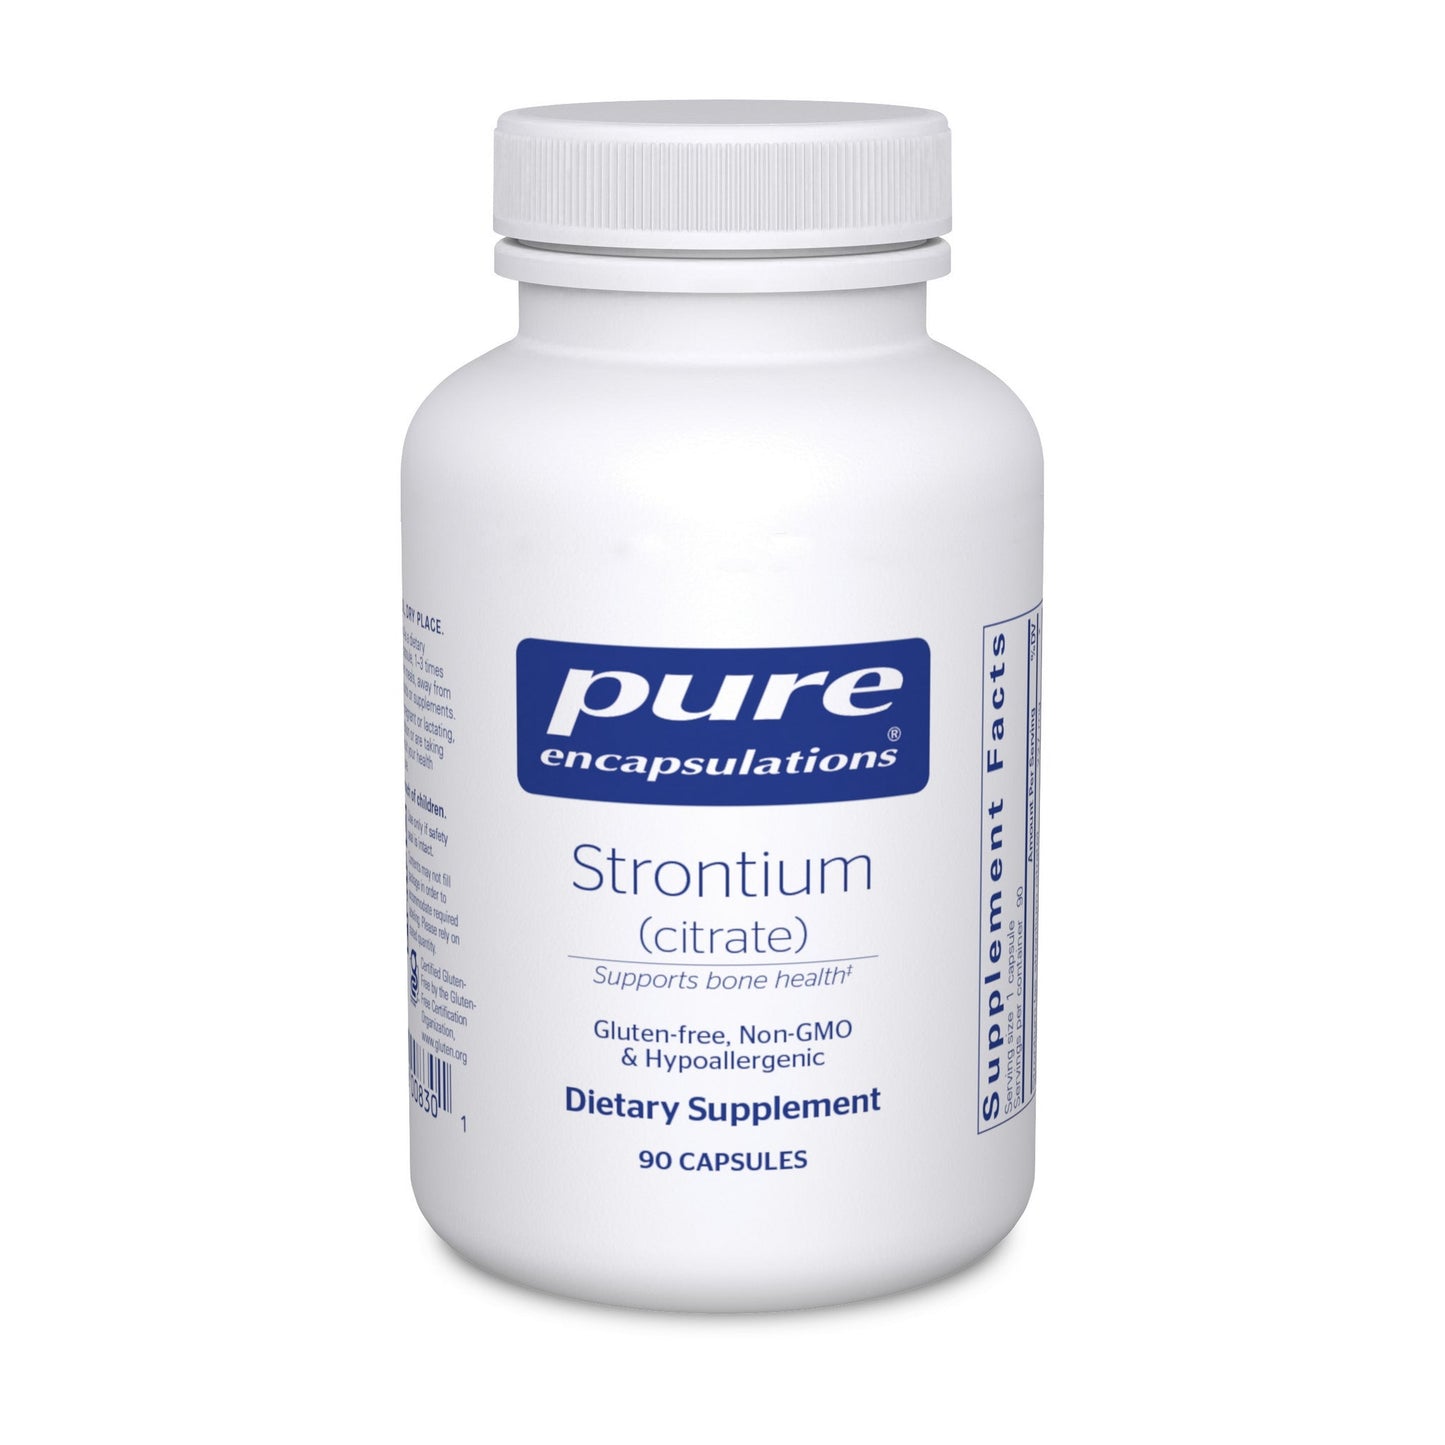 Strontium (citrate)